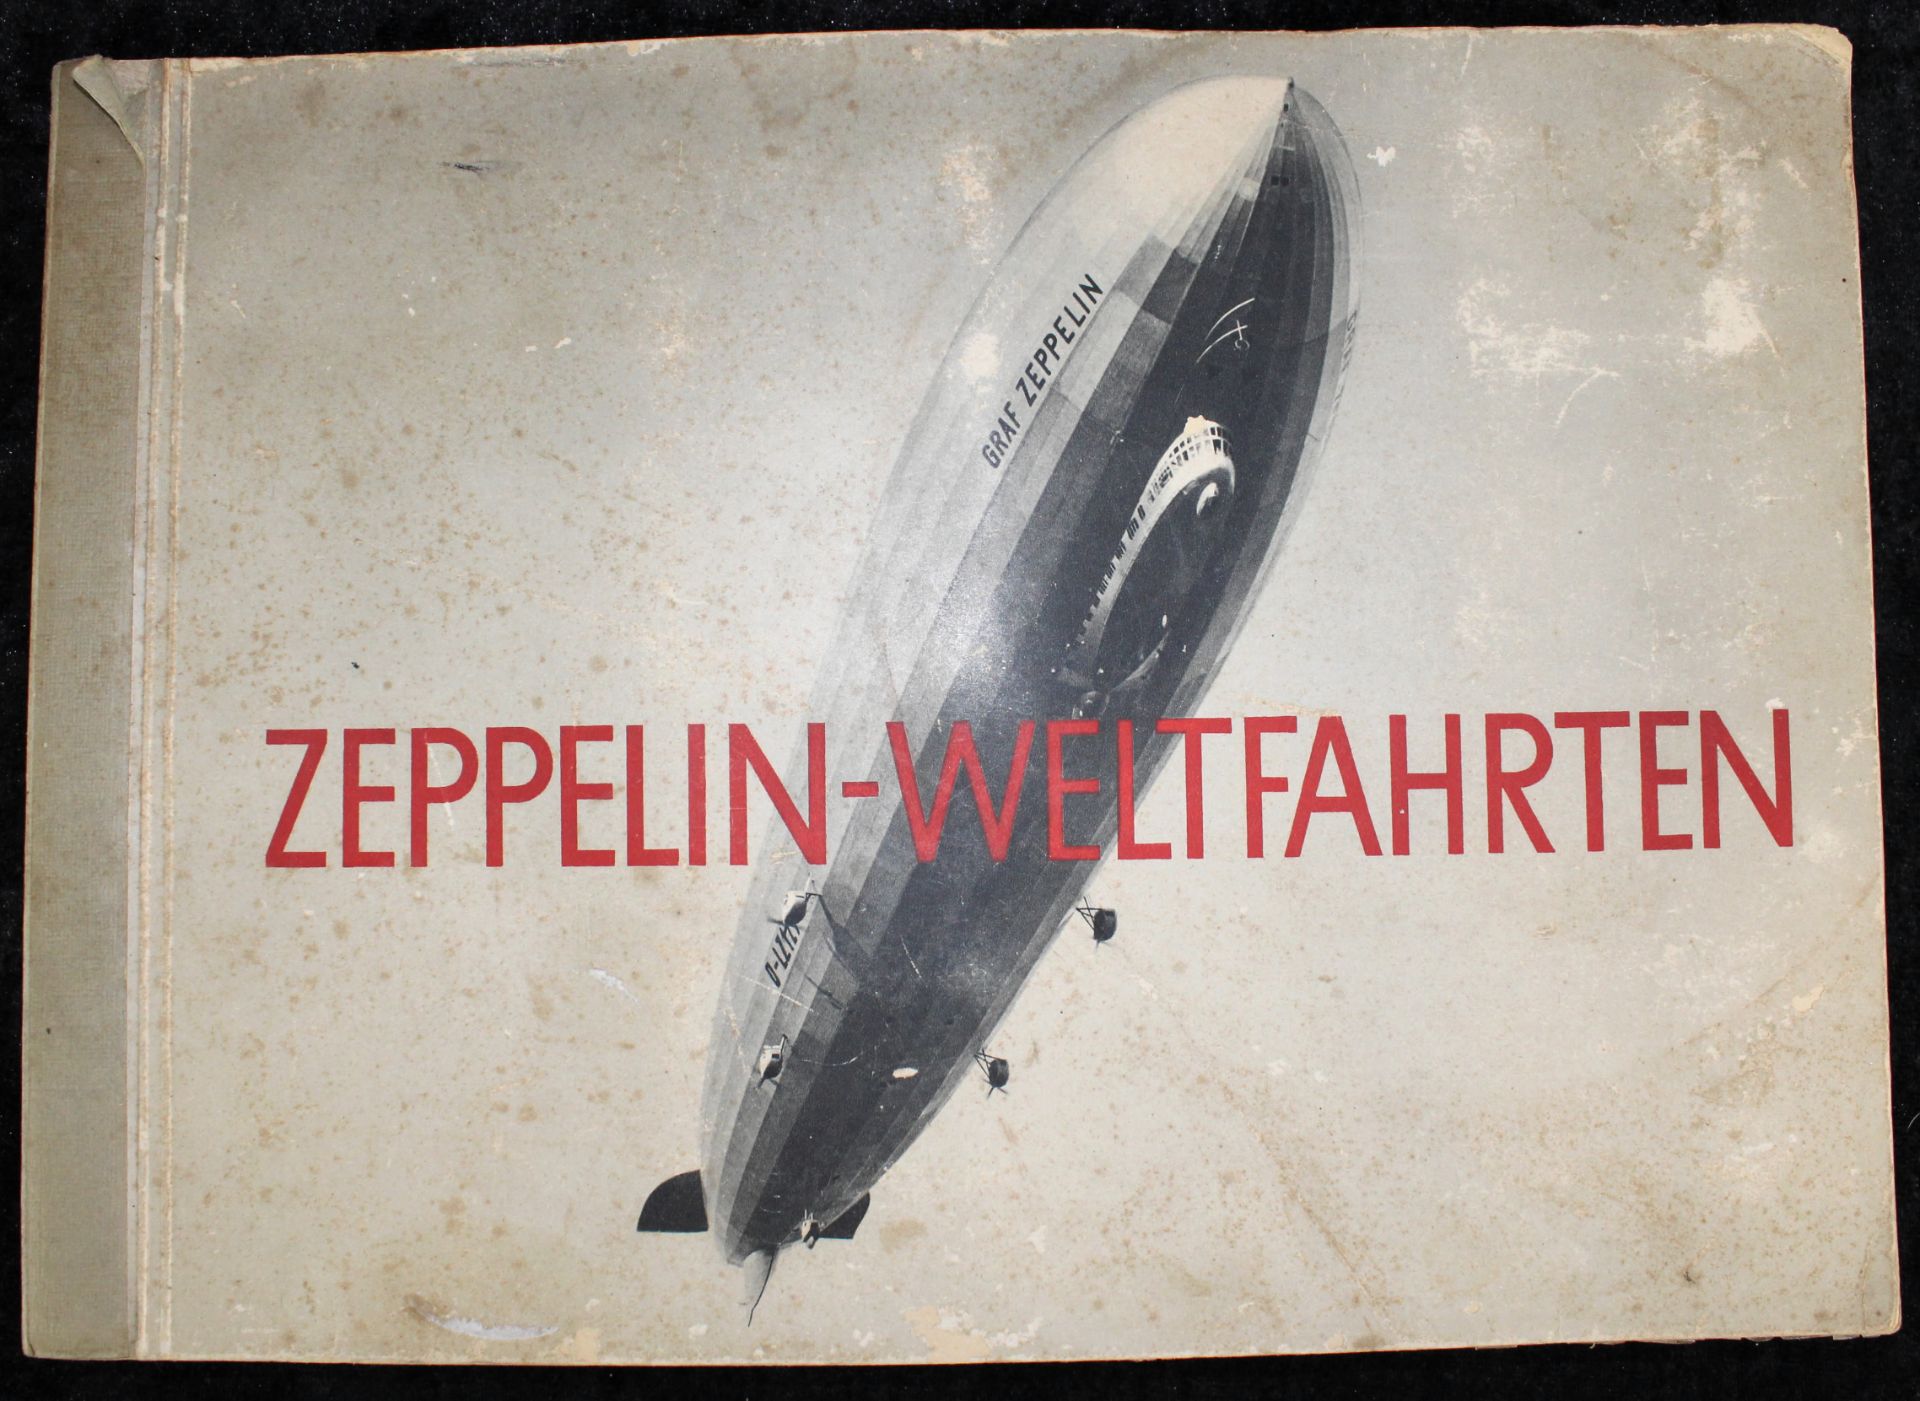 Sammelalbum Zeppelin-Weltfahrten, Bilderstelle Lohse, Dresden 1933